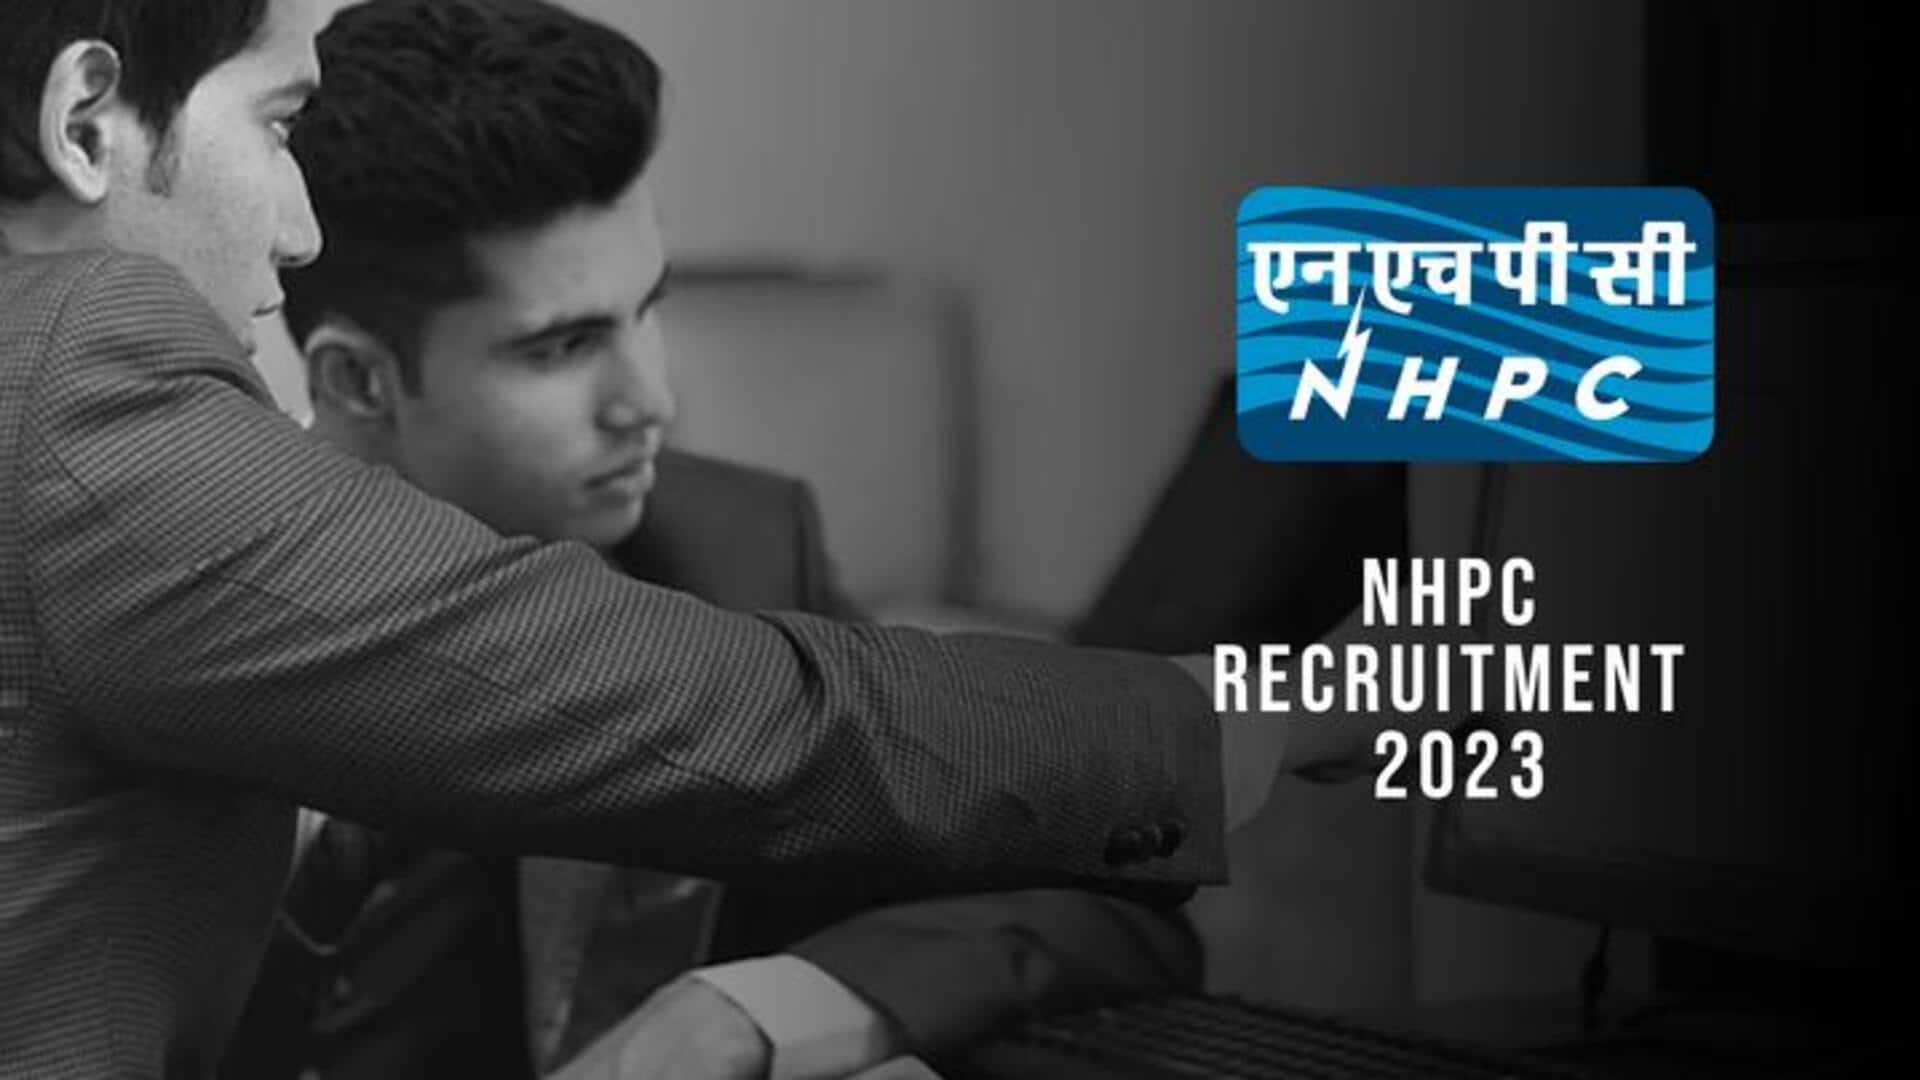 NHPC ने 388 पदों पर निकाली भर्ती, आज से शुरू हुई आवेदन प्रक्रिया